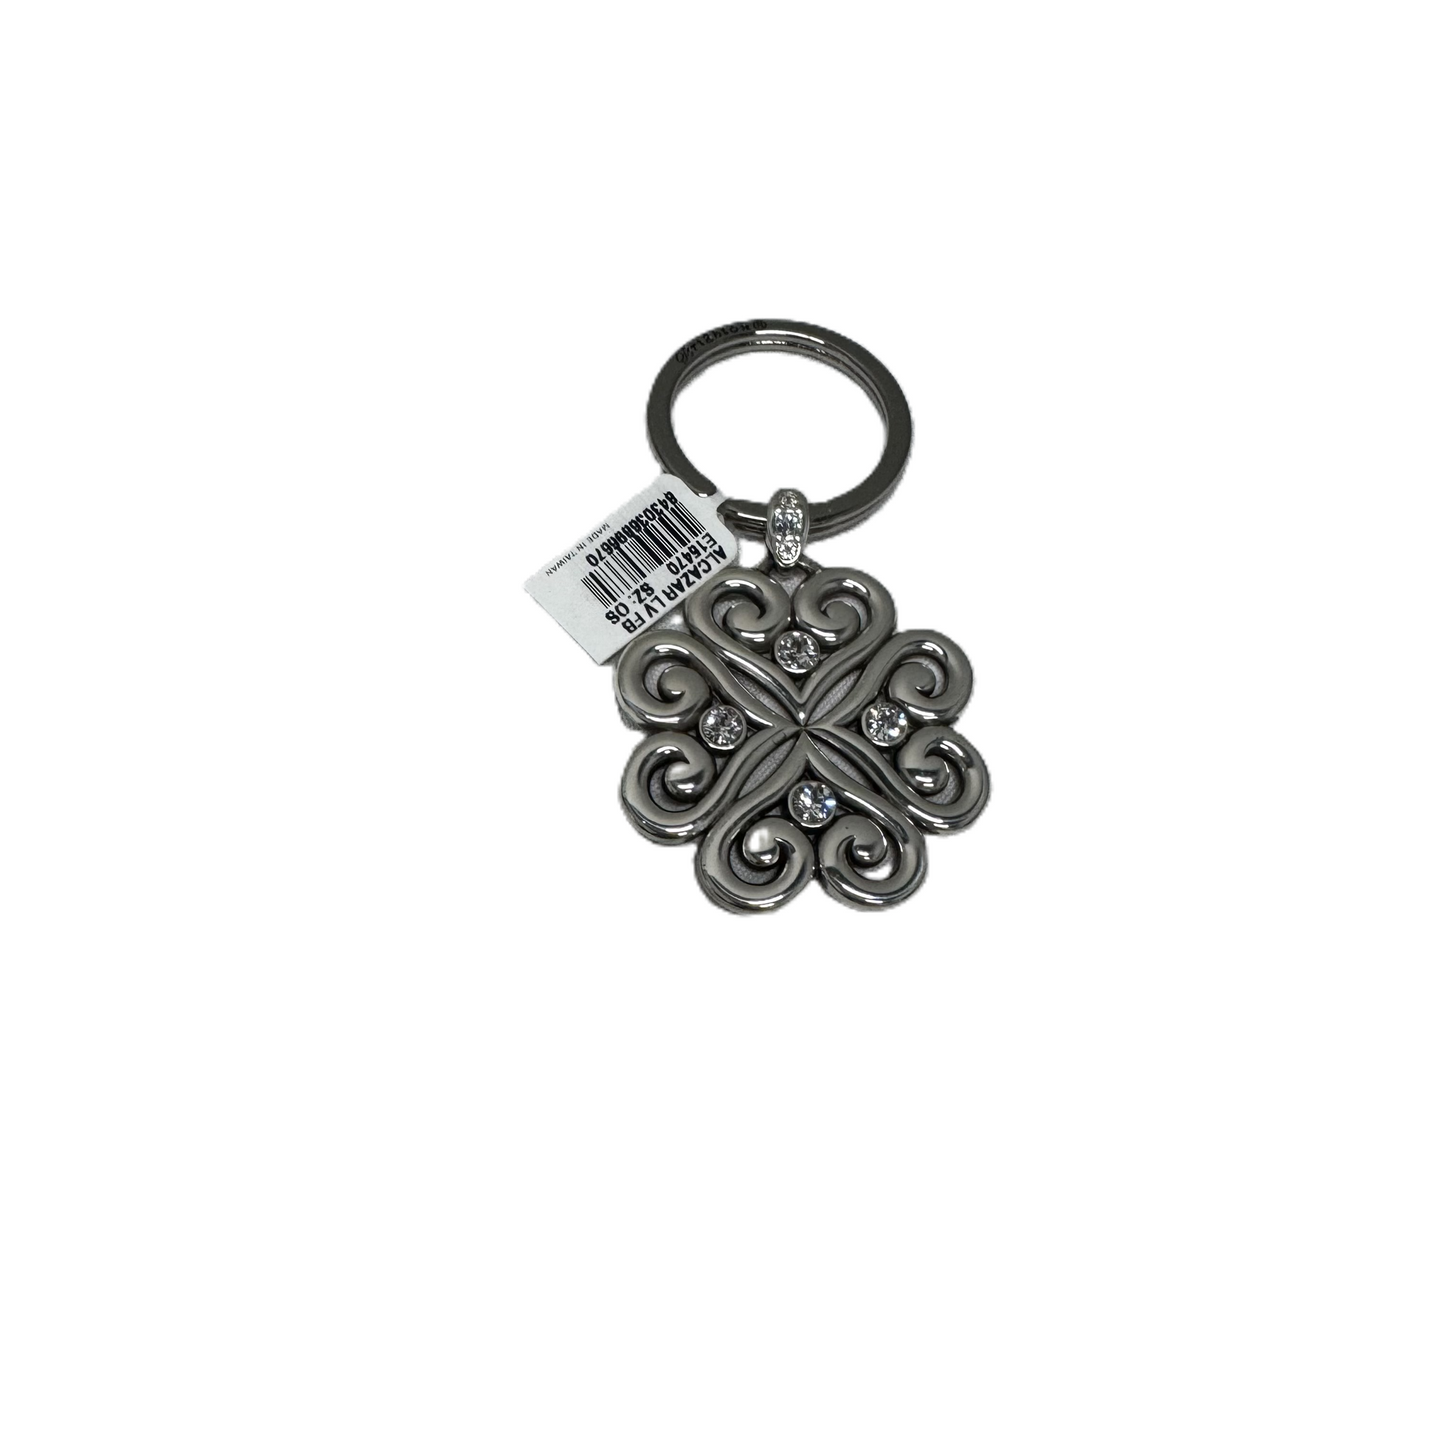 Key Chain Designer By Brighton, Size: 01 Piece